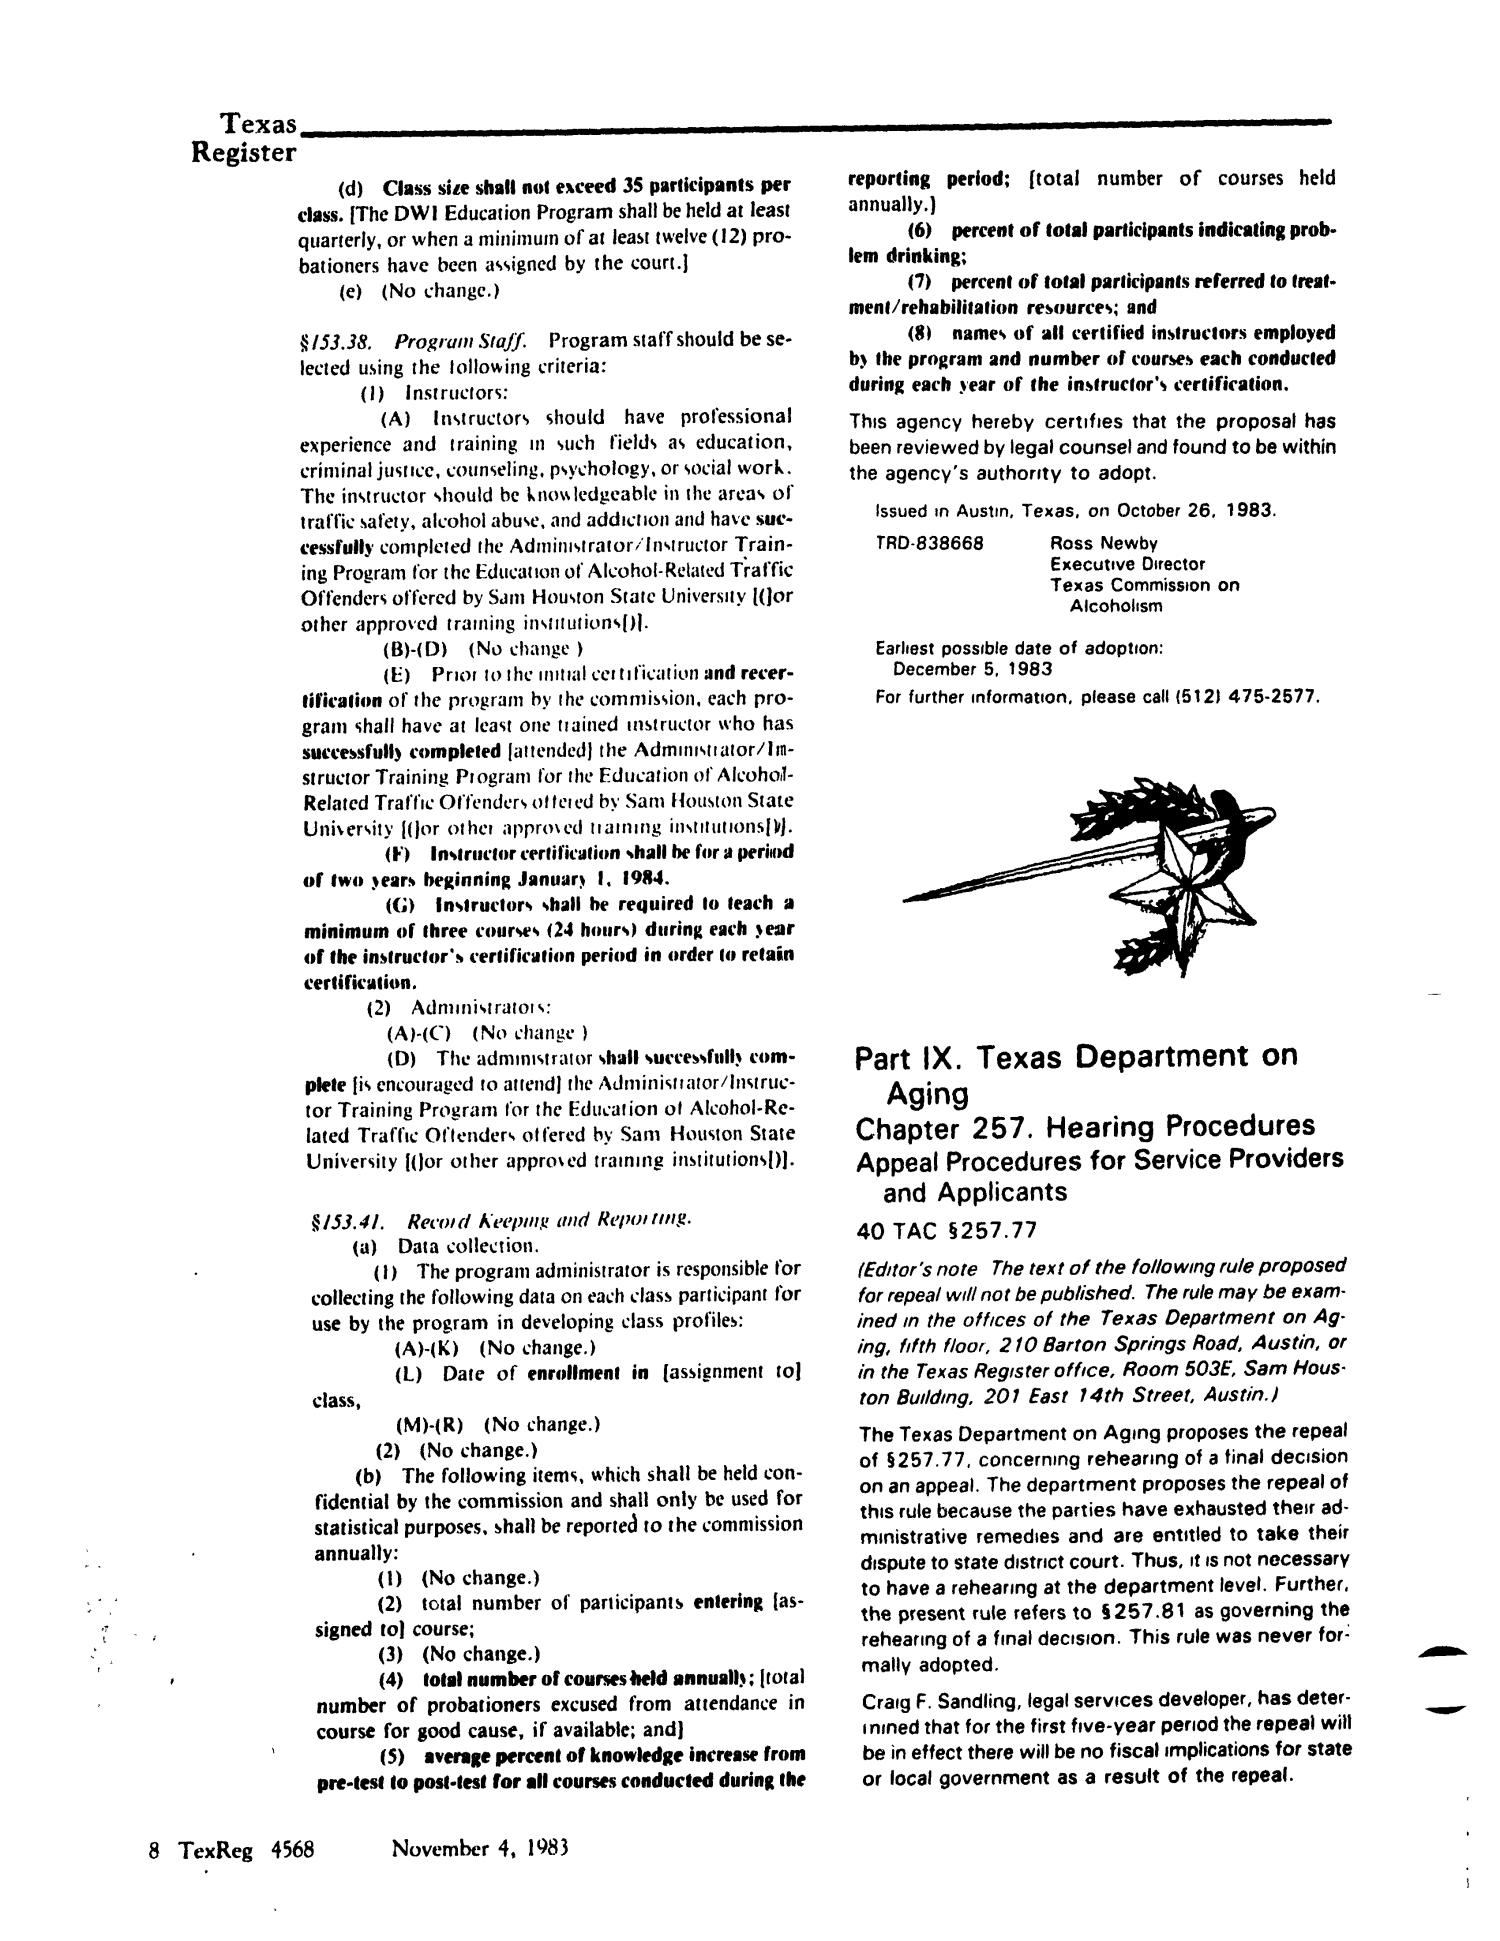 Texas Register, Volume 8, Number 81, Pages 4521-4626, November 4, 1983
                                                
                                                    4568
                                                